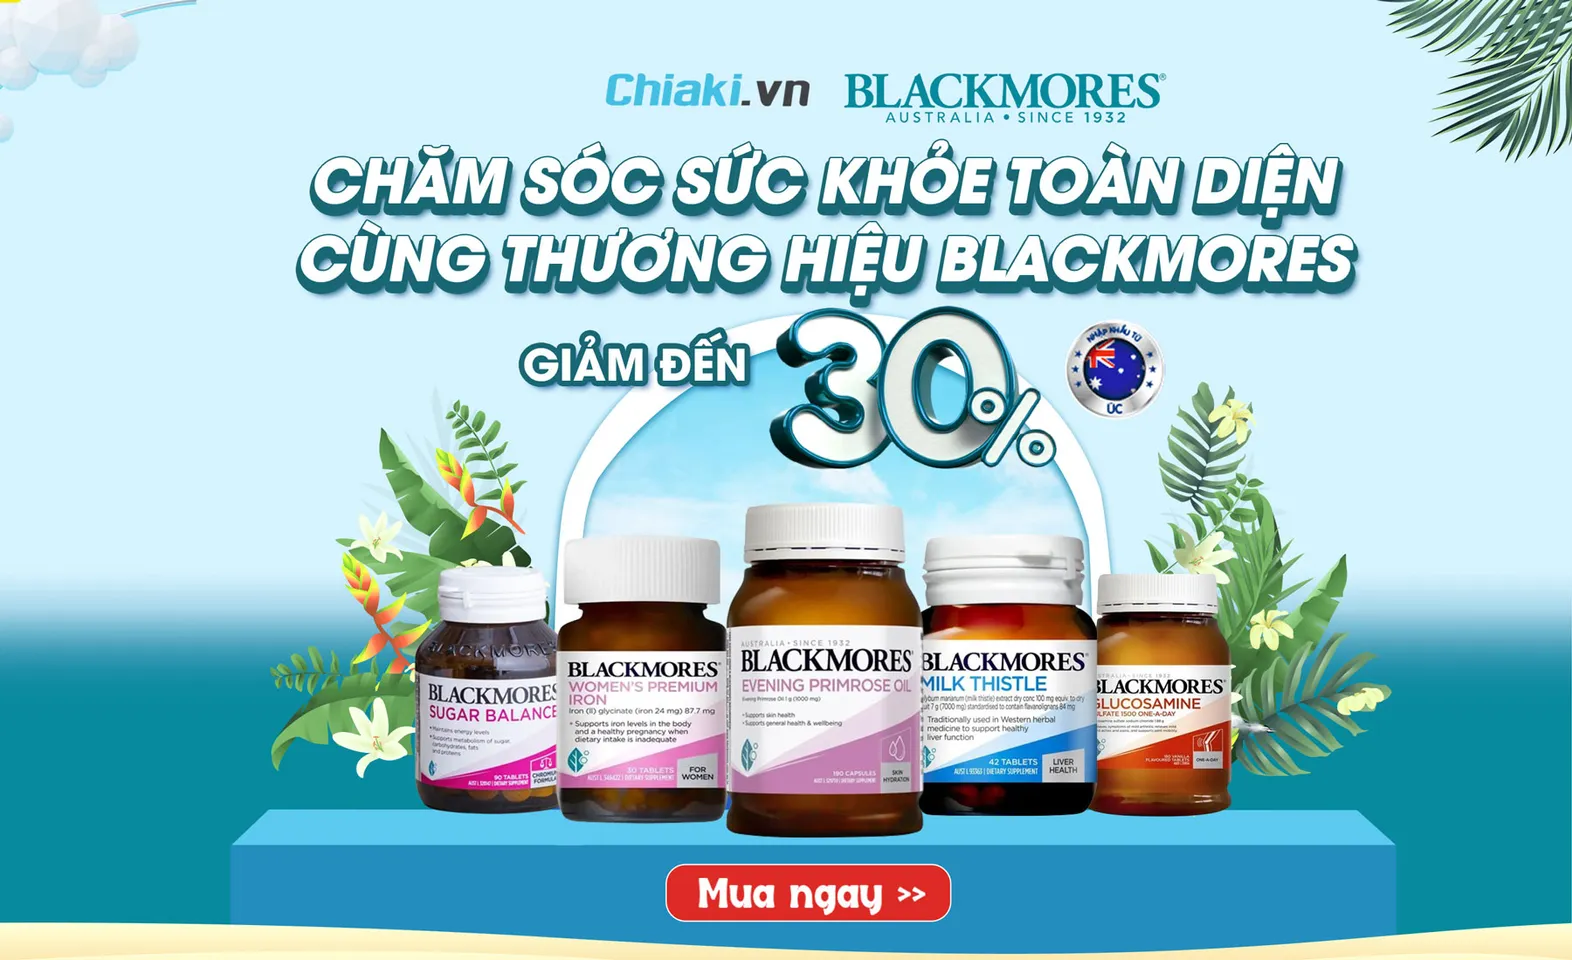 Chiaki Sale sản phẩm Blackmores của Úc giảm đến 30%